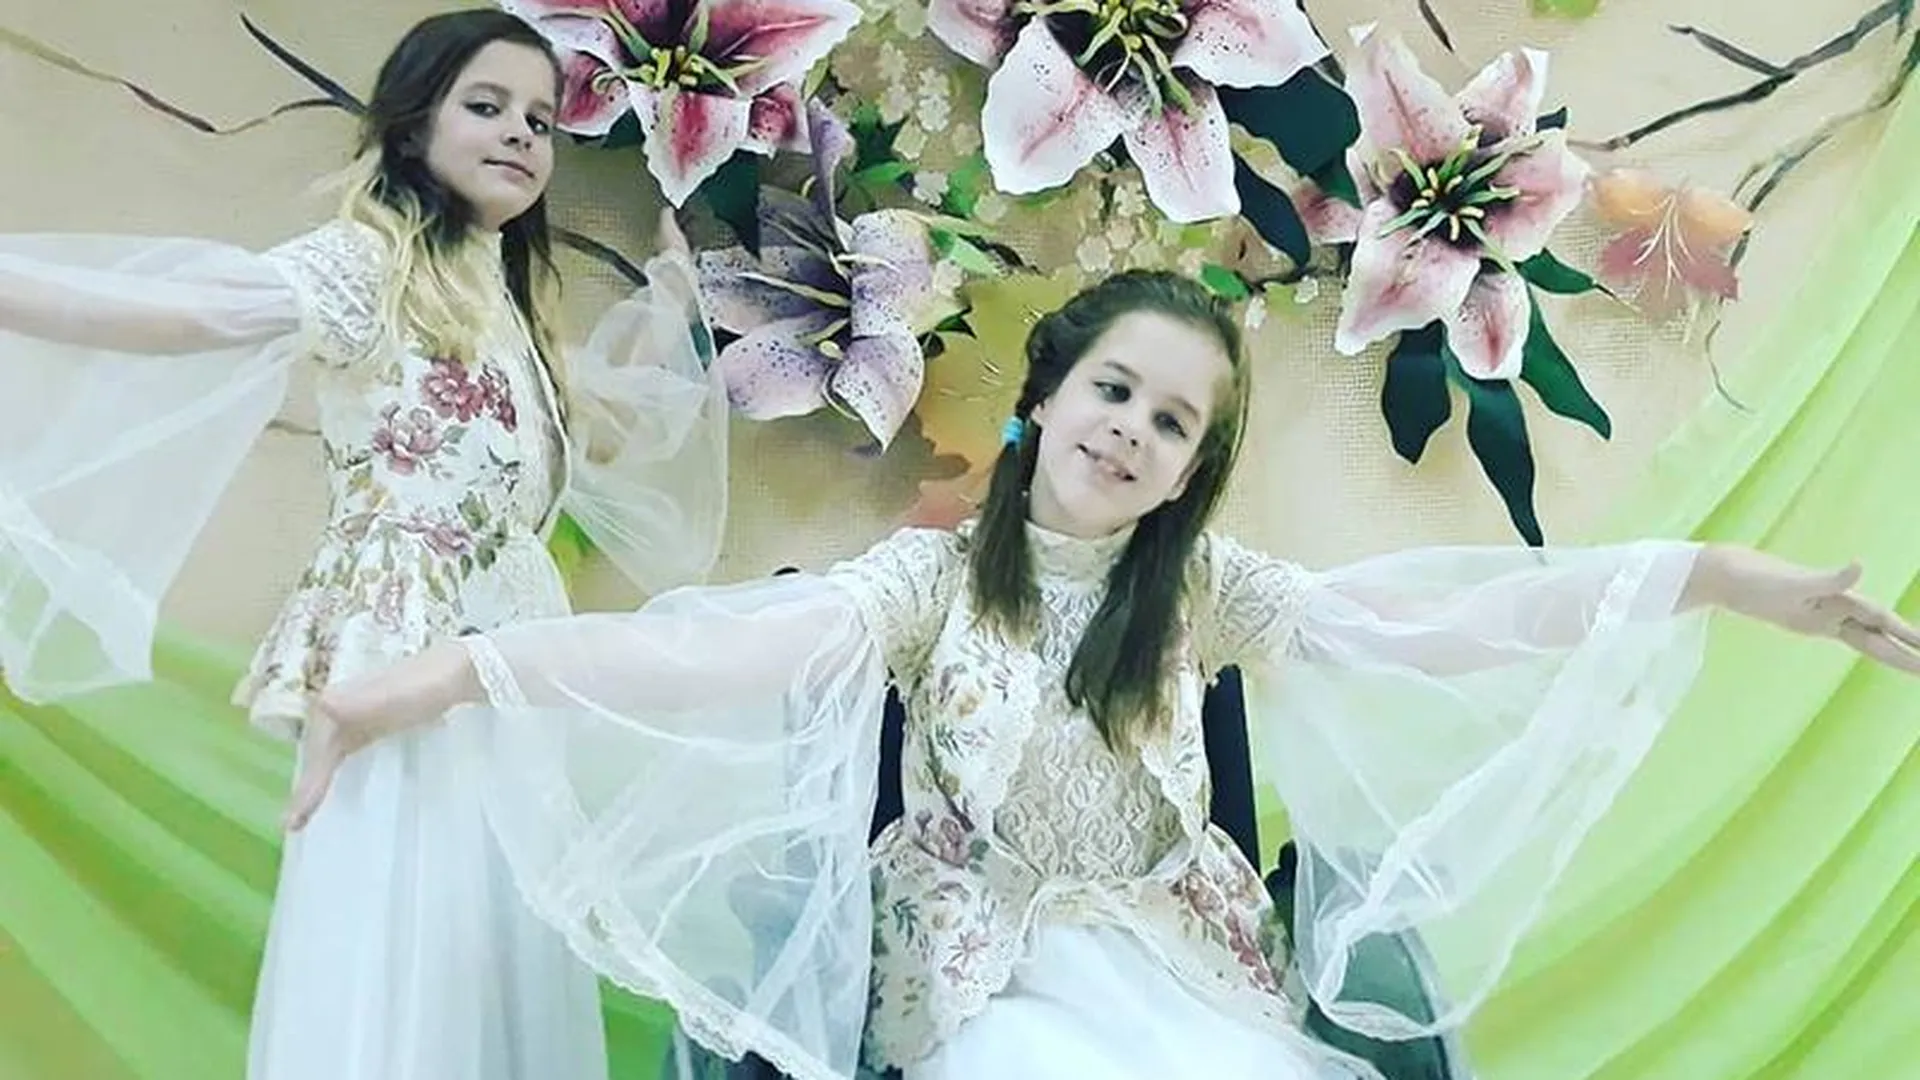 Сестры-инвалиды из Егорьевска мечтают победить болезнь с помощью музыки